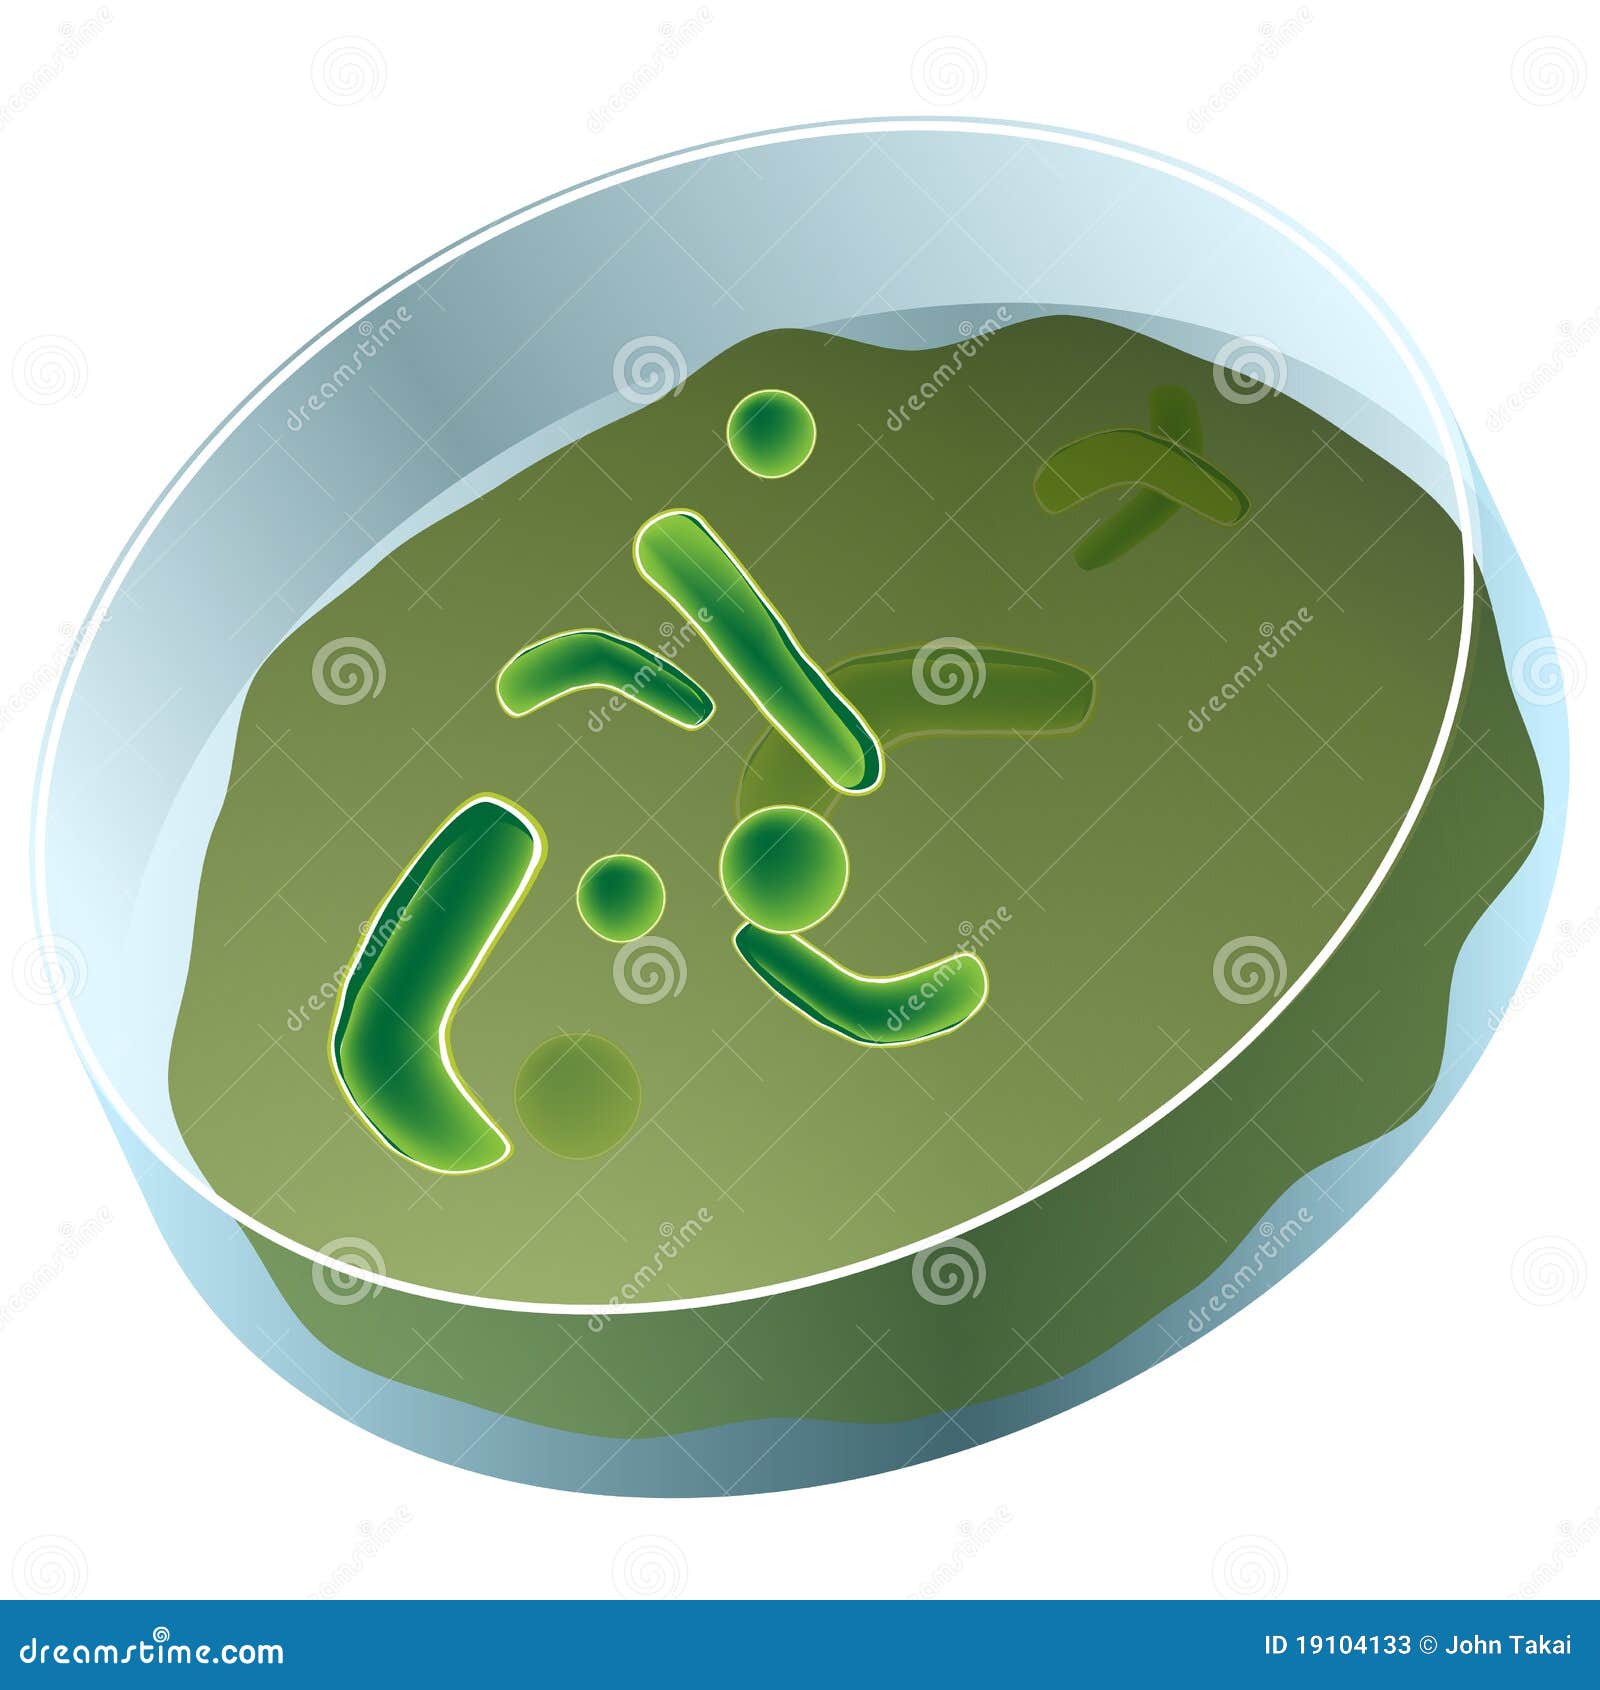 petri dish of bacteria